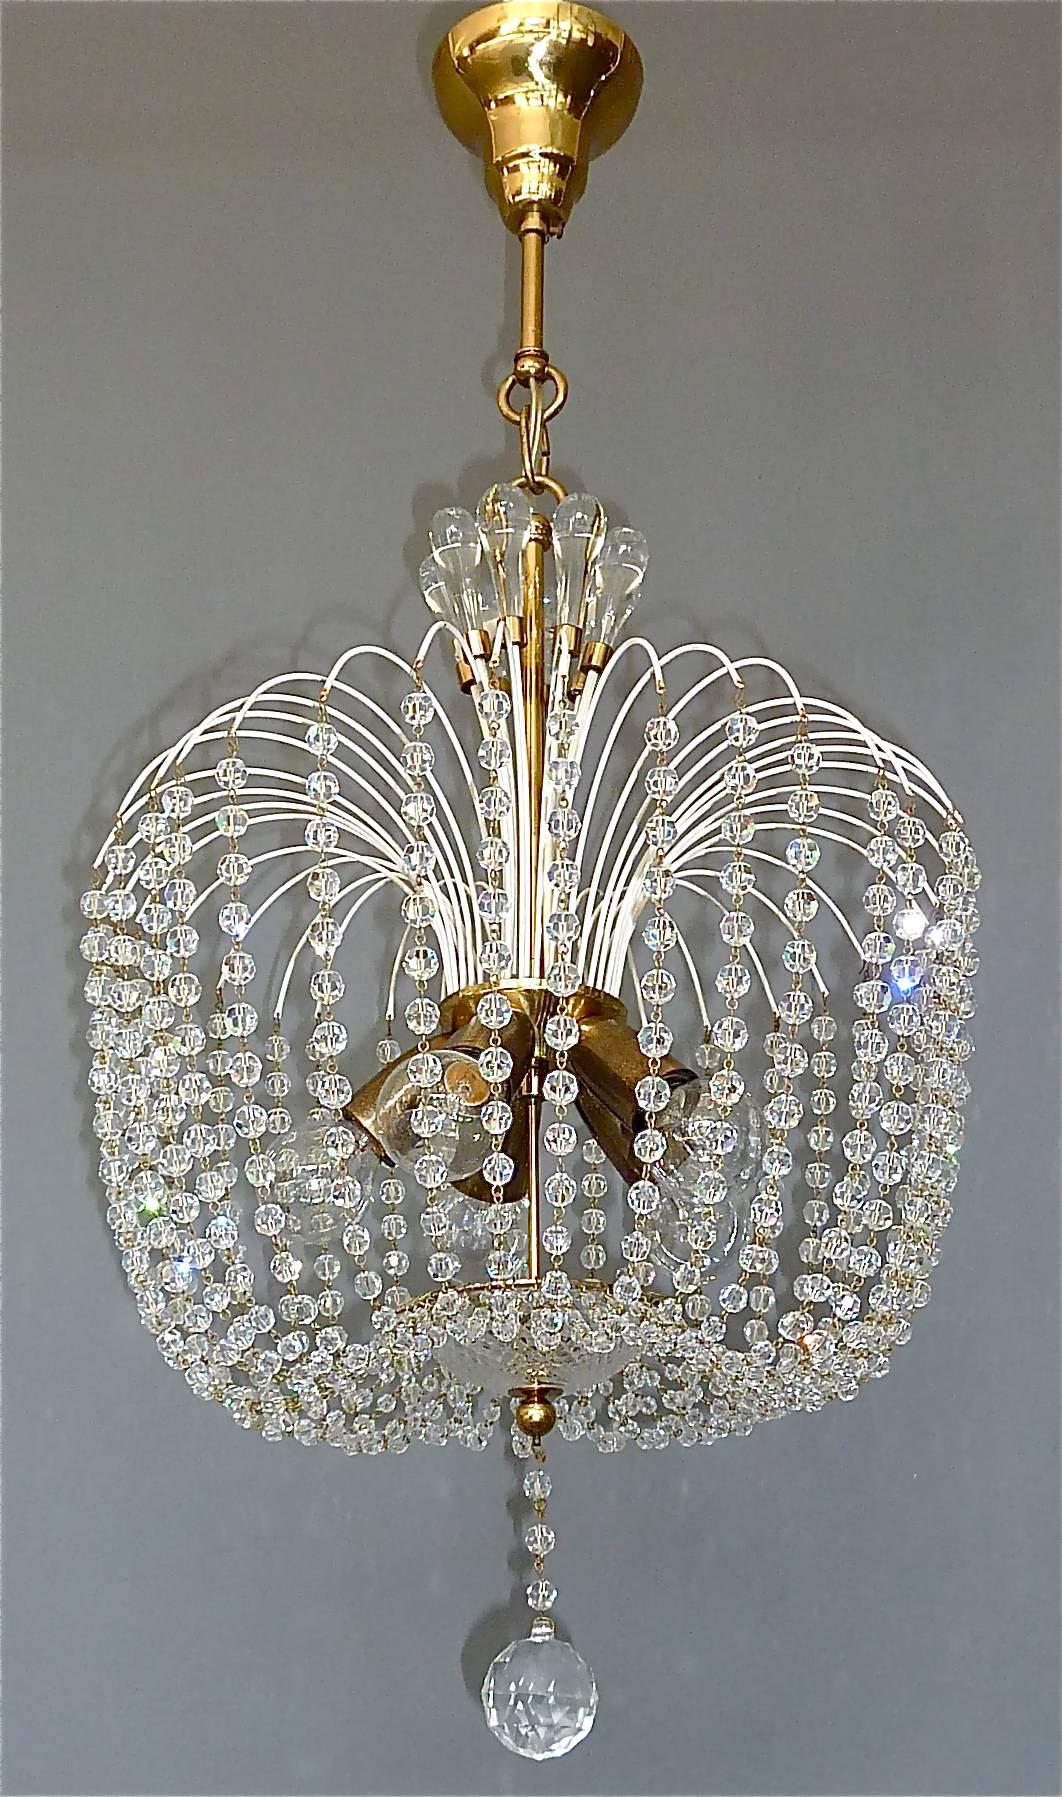 Fantastique lustre en spoutnik blanc du milieu du siècle dernier, en verre de cristal étincelant et laiton patiné, attribué à J.L Lobmeyr ou Emil Stejnar pour Rupert Nikoll, Autriche, vers 1955. La lampe suspendue est dotée de fils de perles en